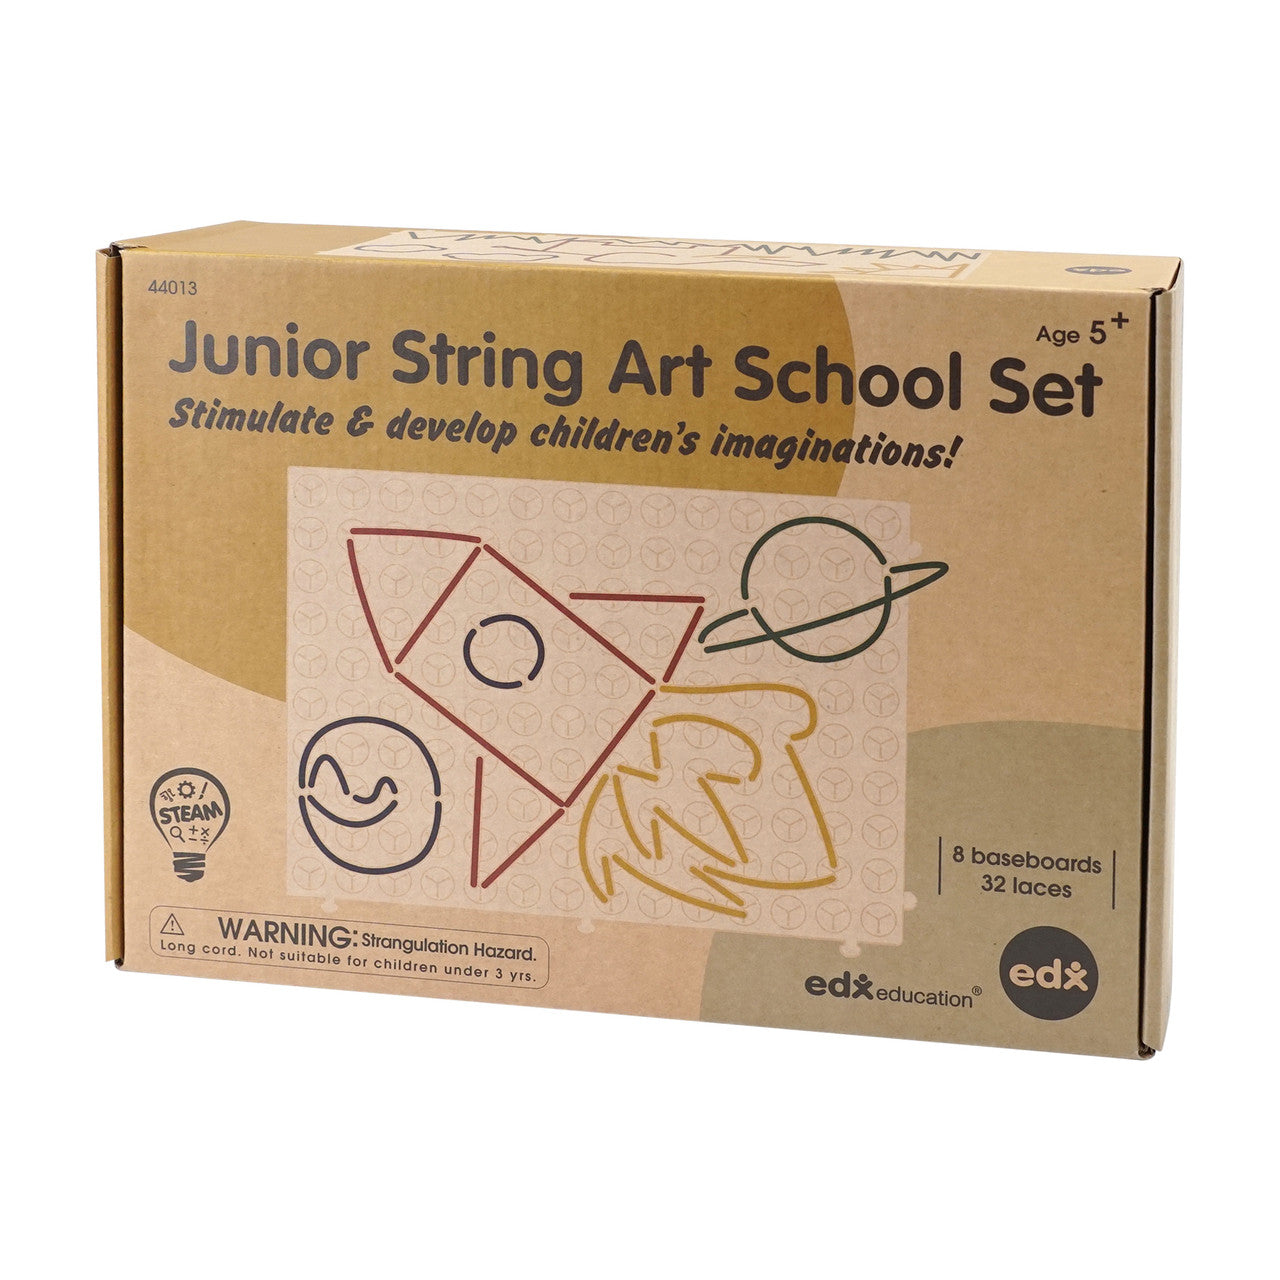 Junior String Art School Set